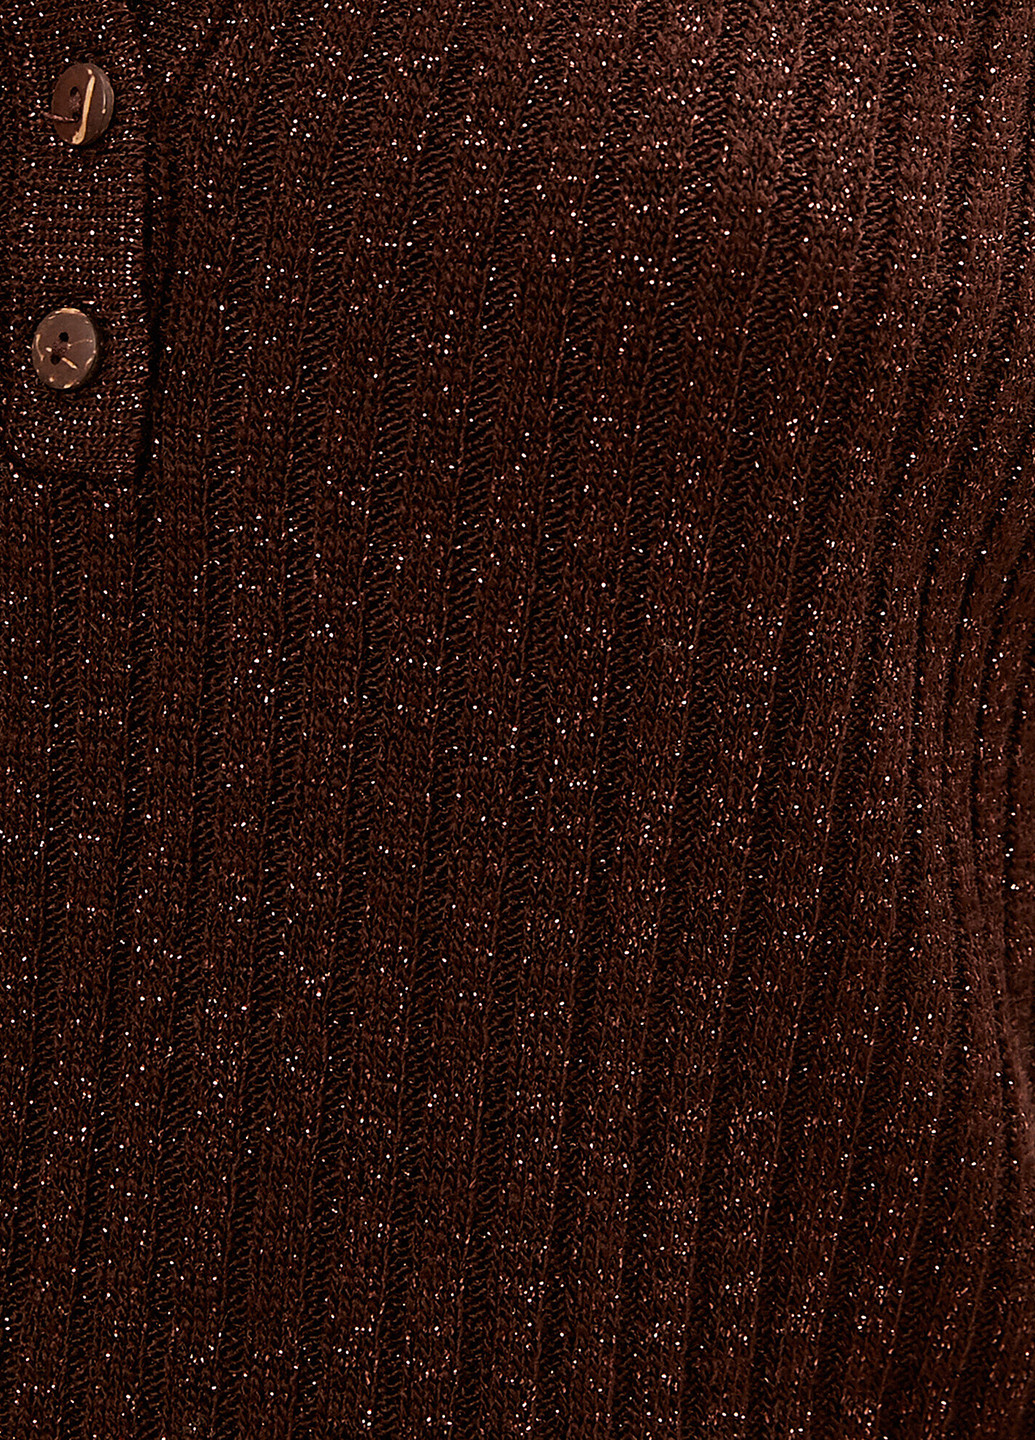 Темно-коричневый демисезонный пуловер пуловер KOTON